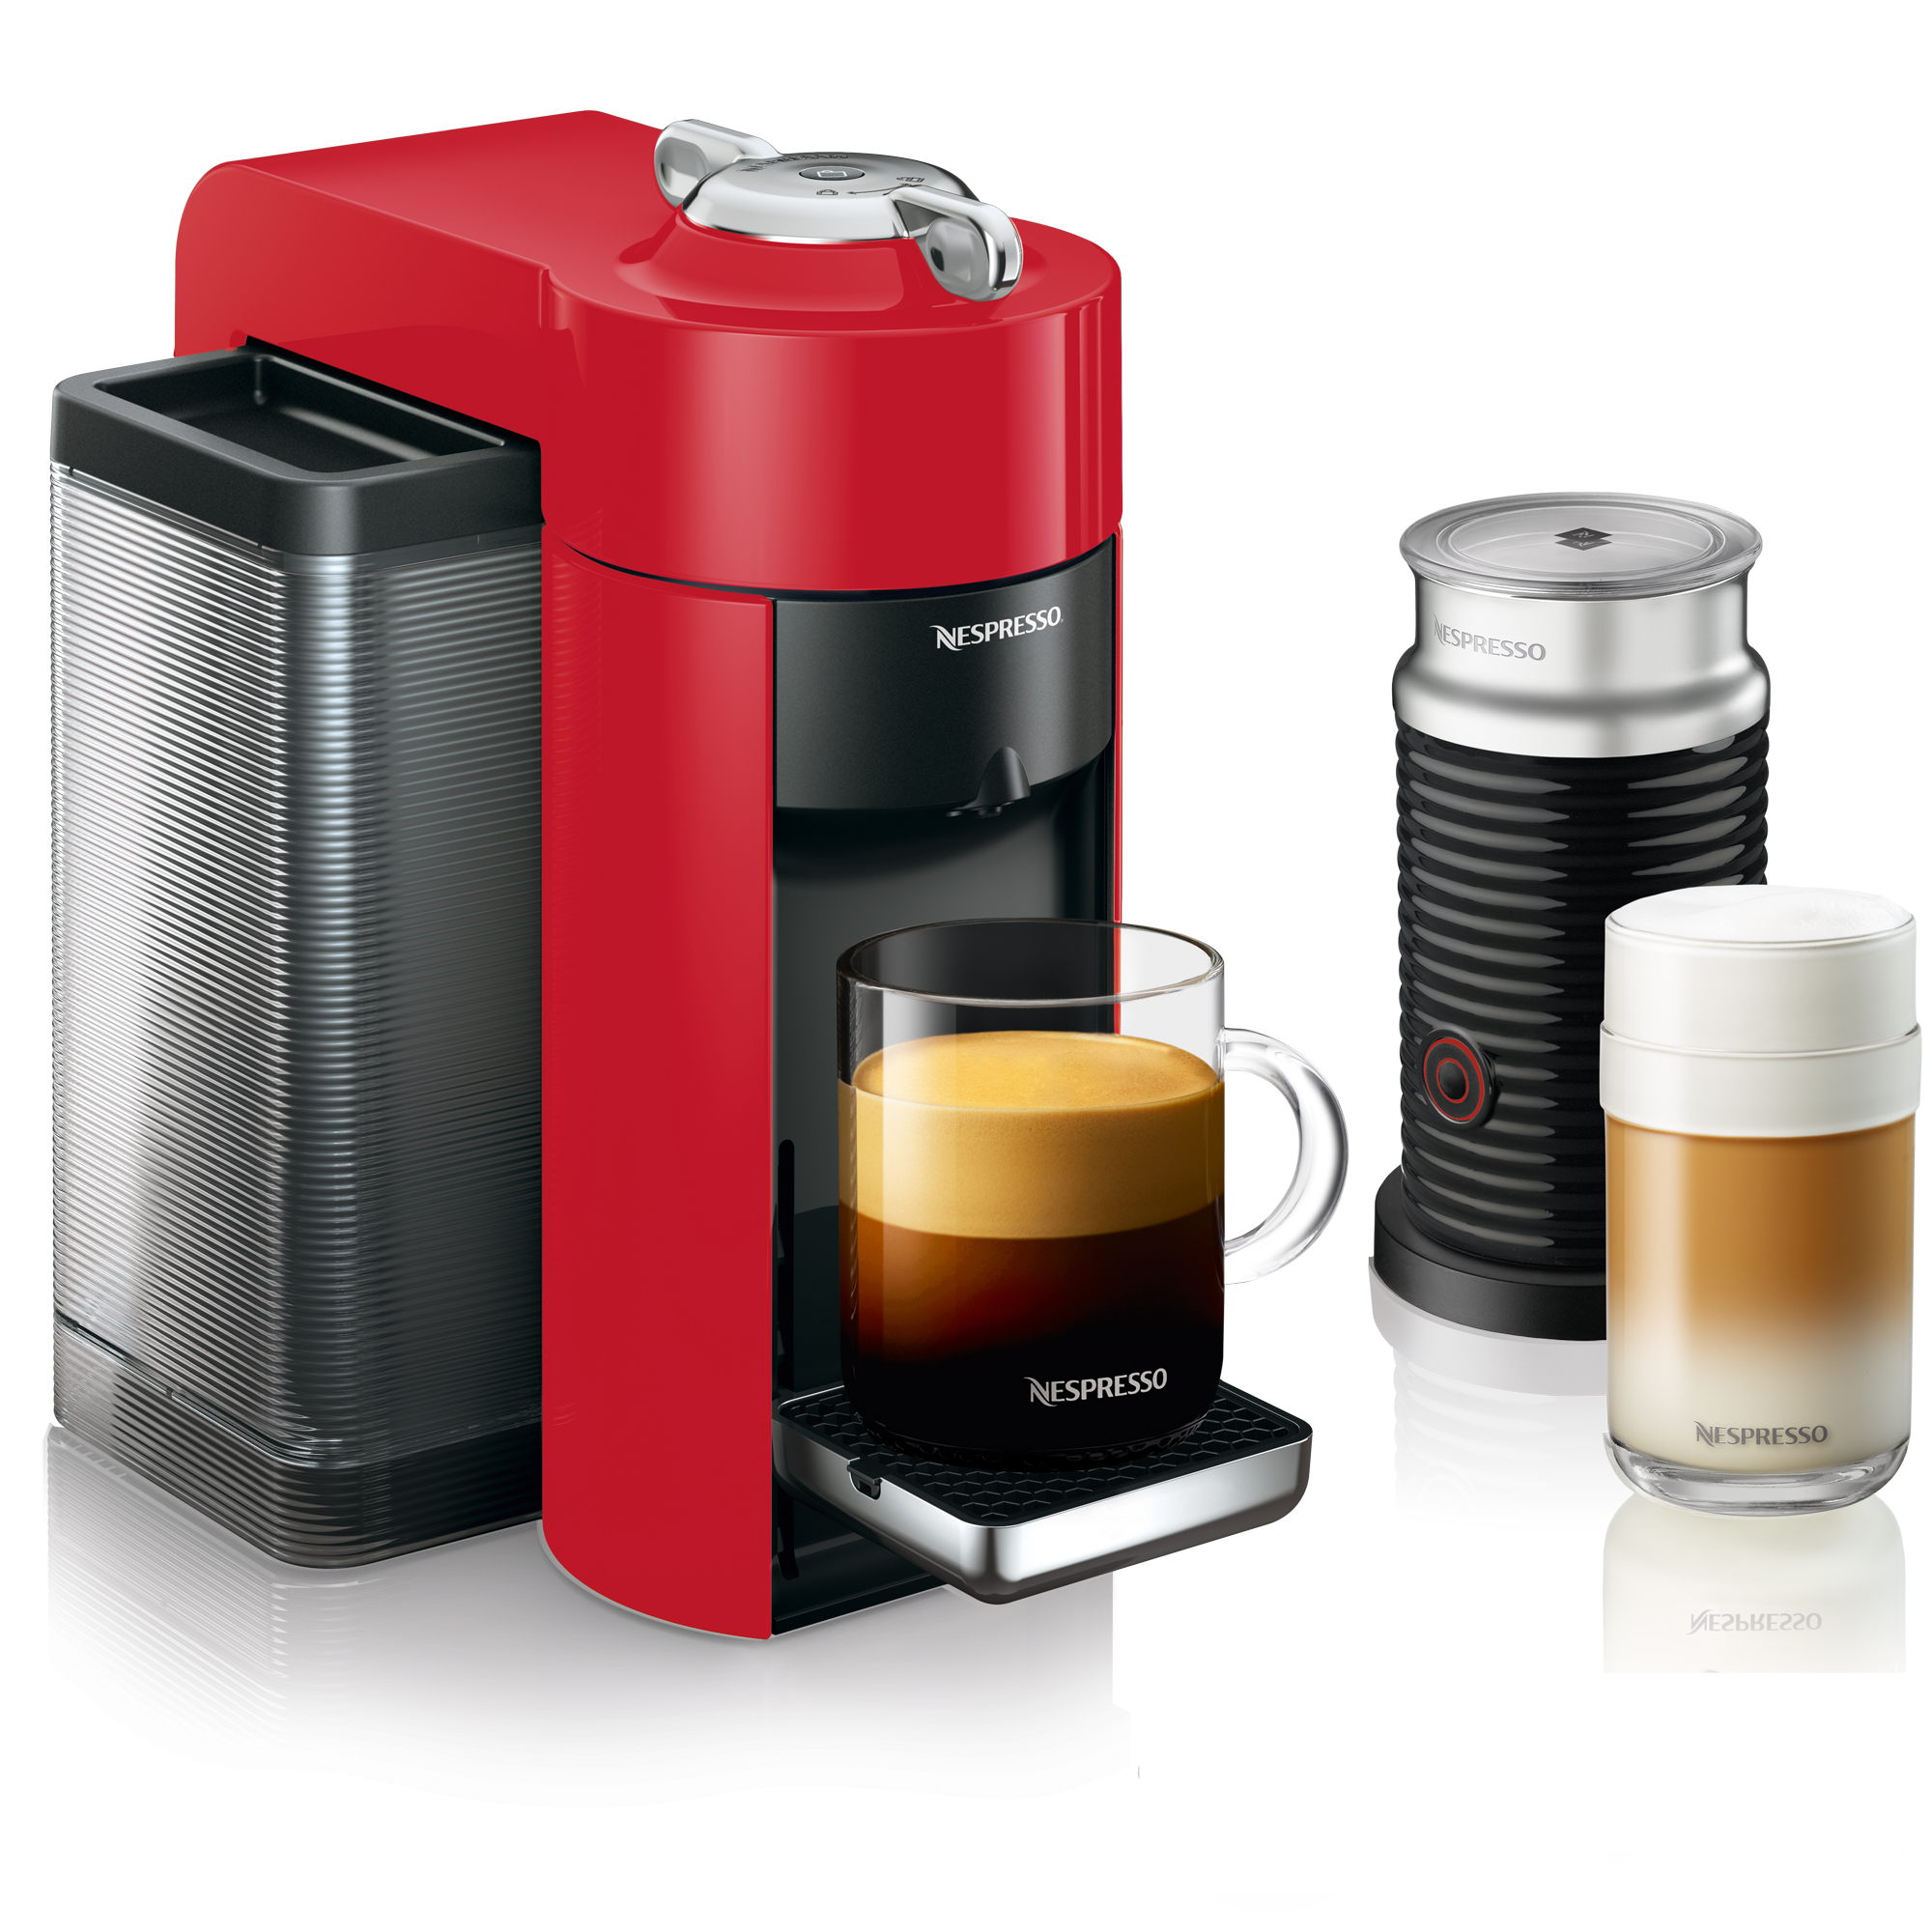 Nestle Coffee Machine Price : Nescafe Cappuccino Vending Machine ...